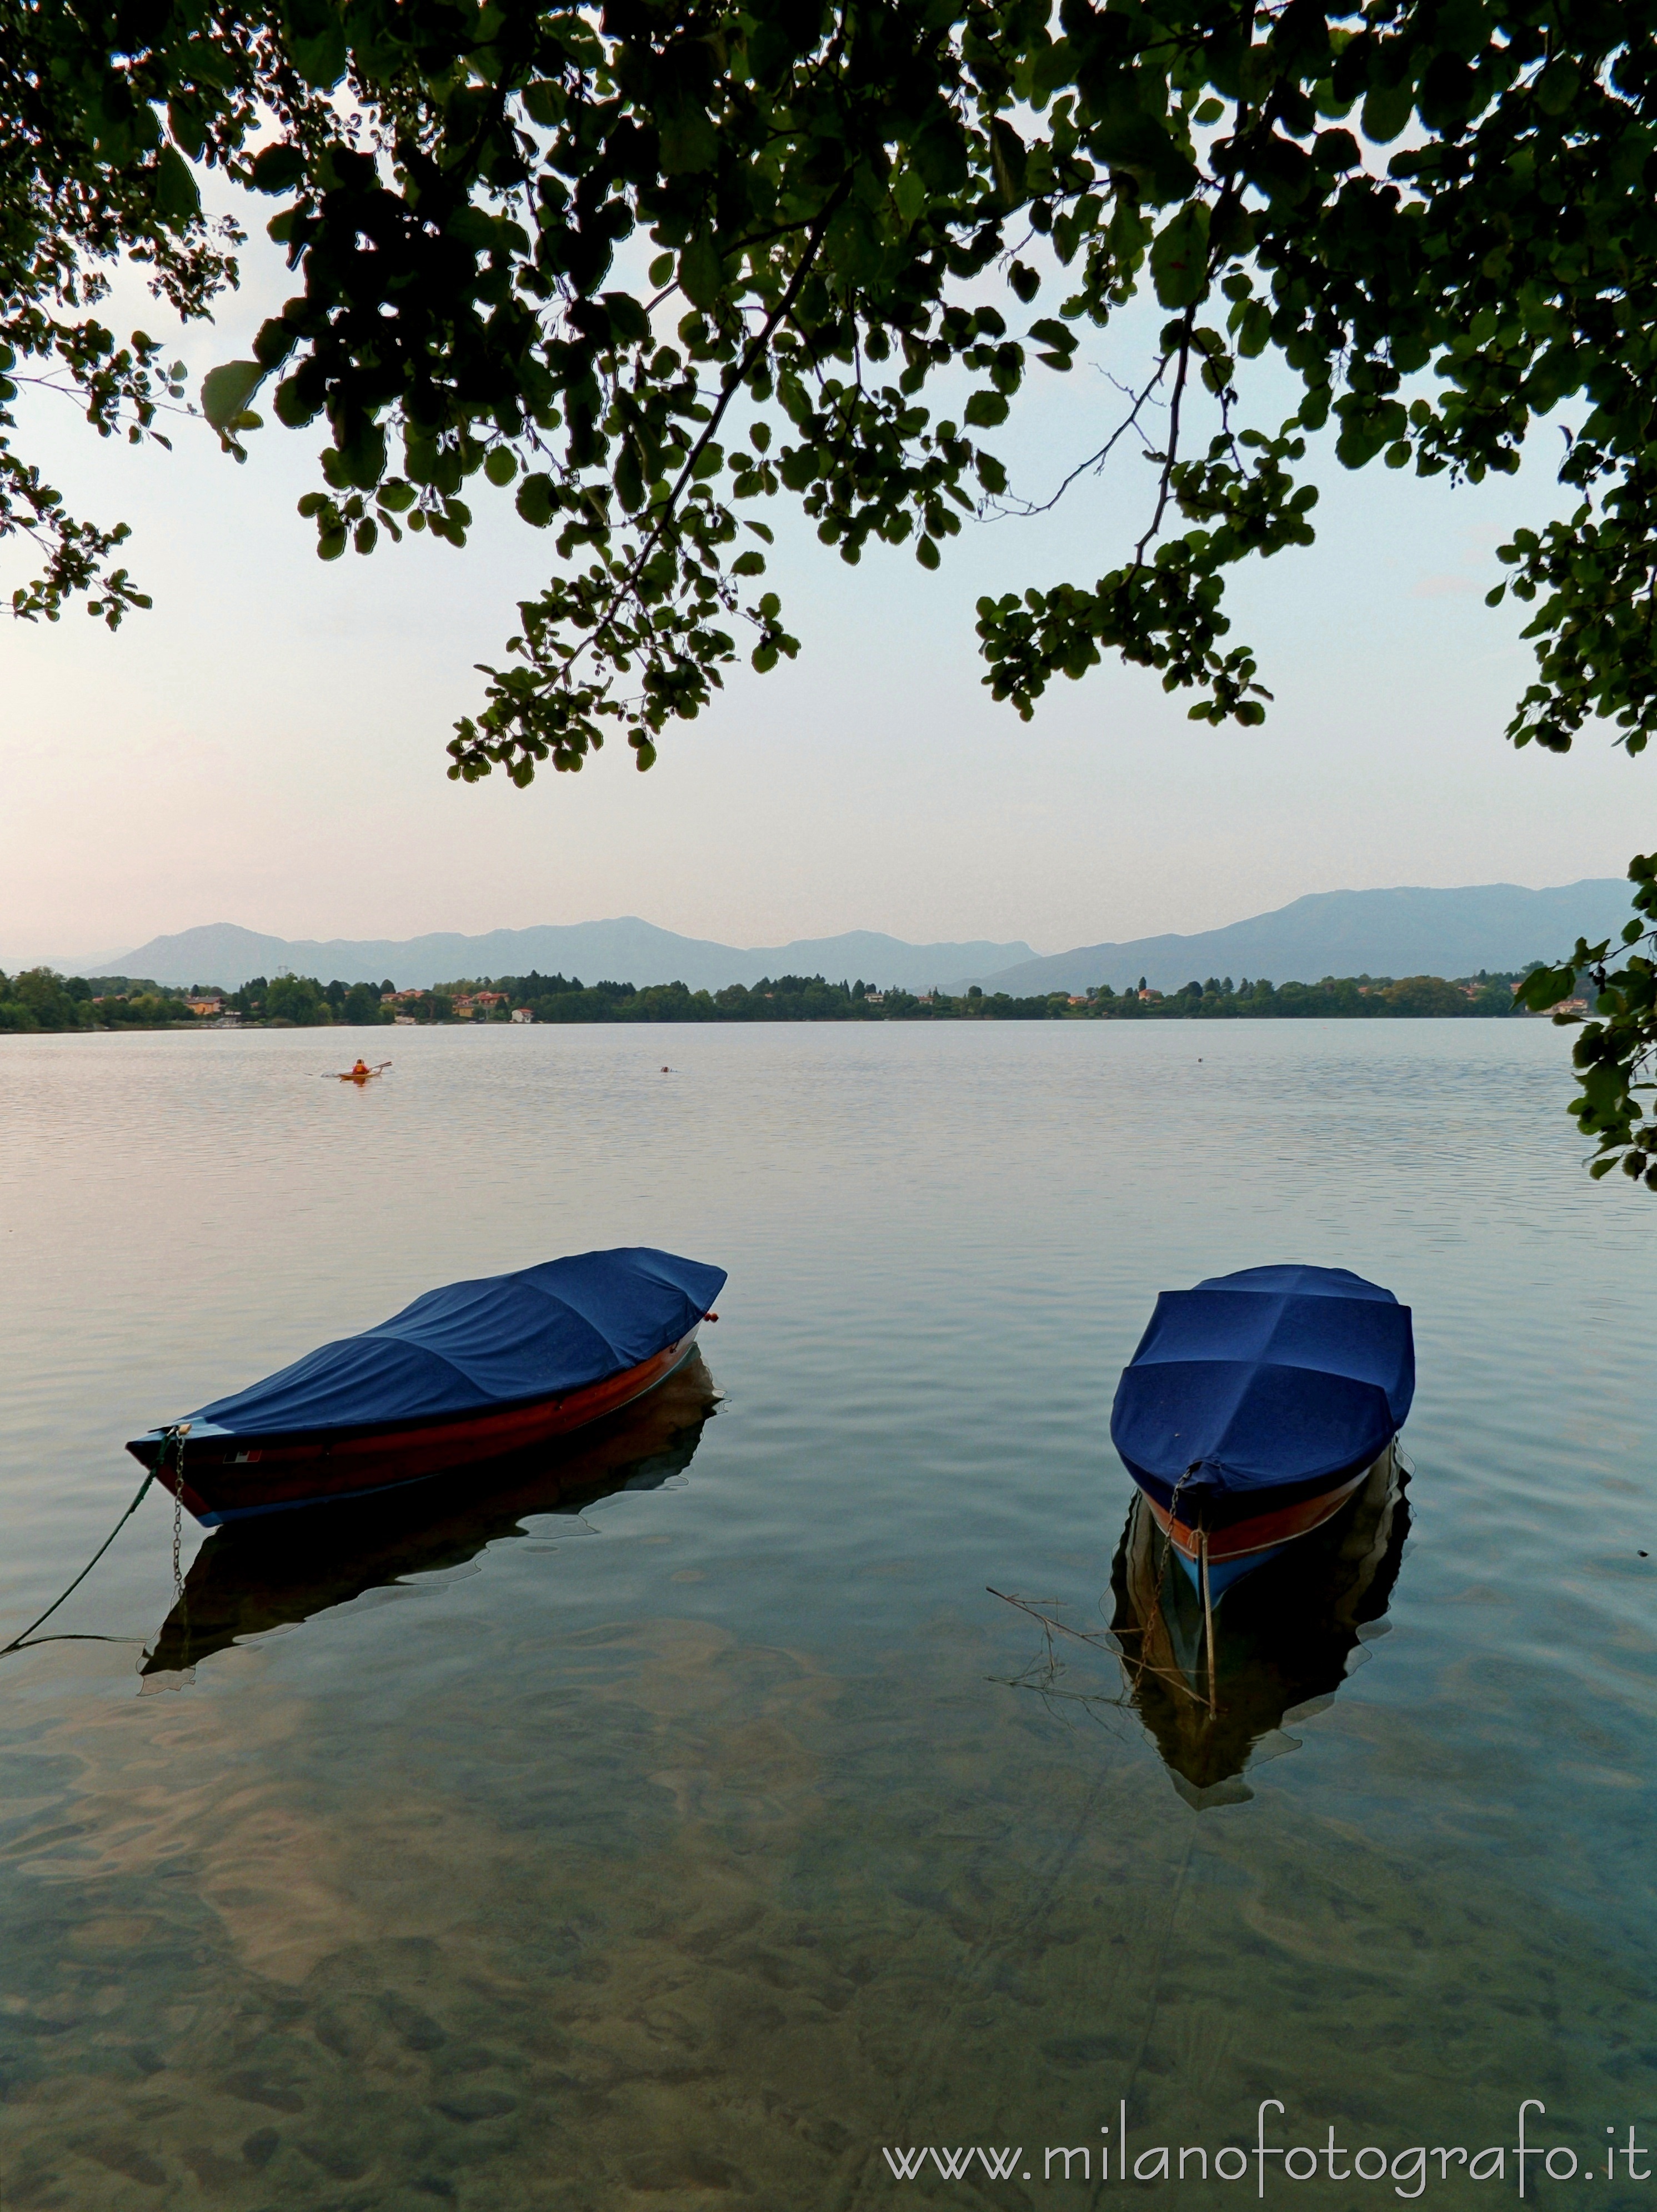 Cadrezzate (Varese): Due barche ormeggiate nel Lago di Monate all'imbrunire - Cadrezzate (Varese)